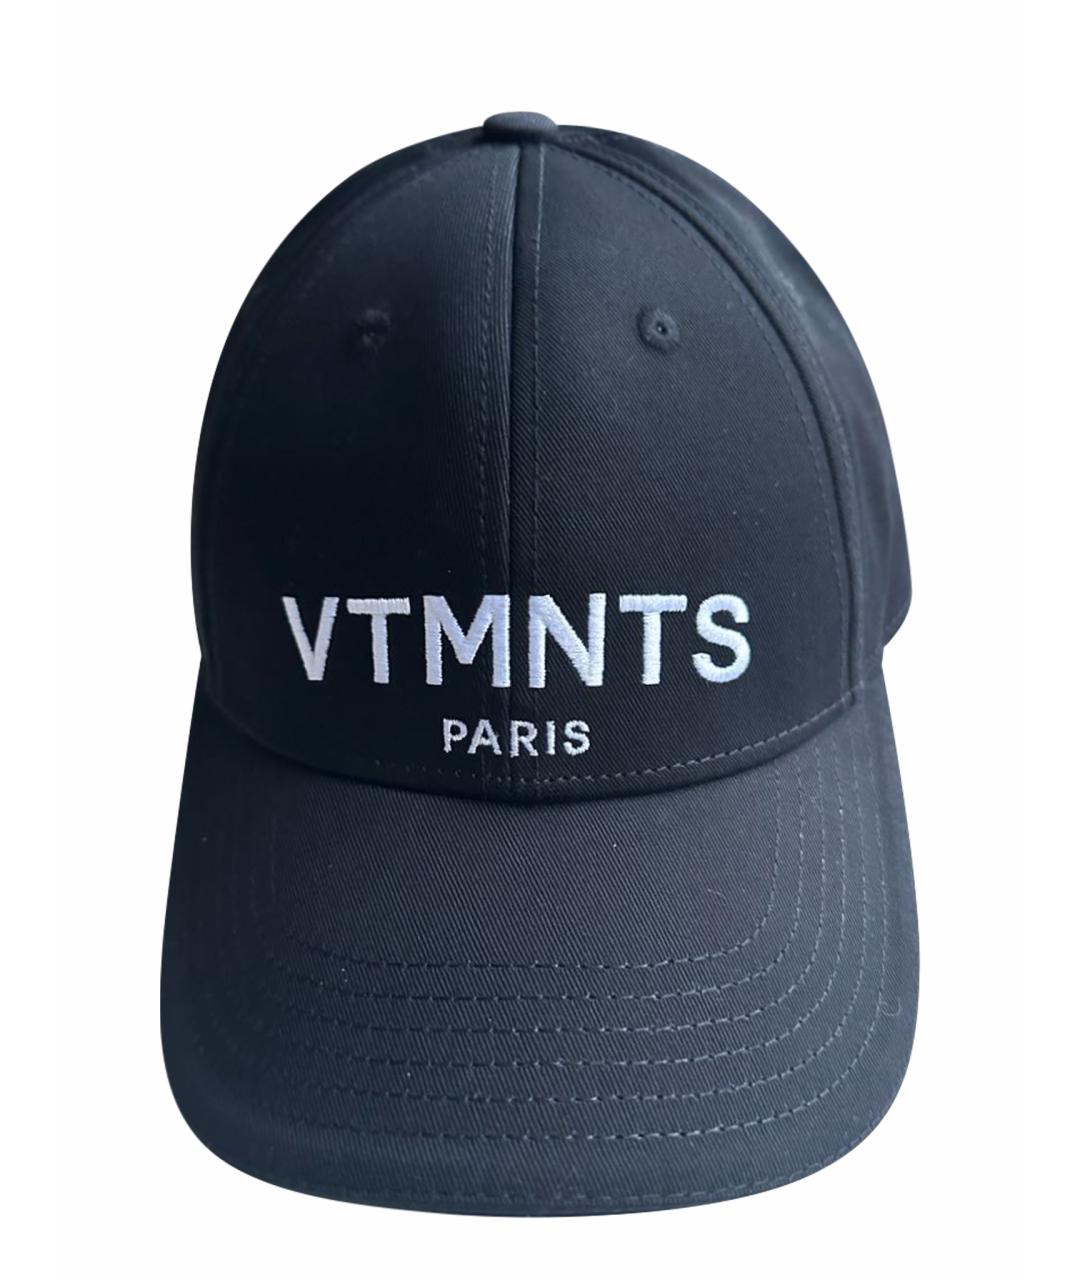 VTMNTS Черная хлопковая кепка, фото 1